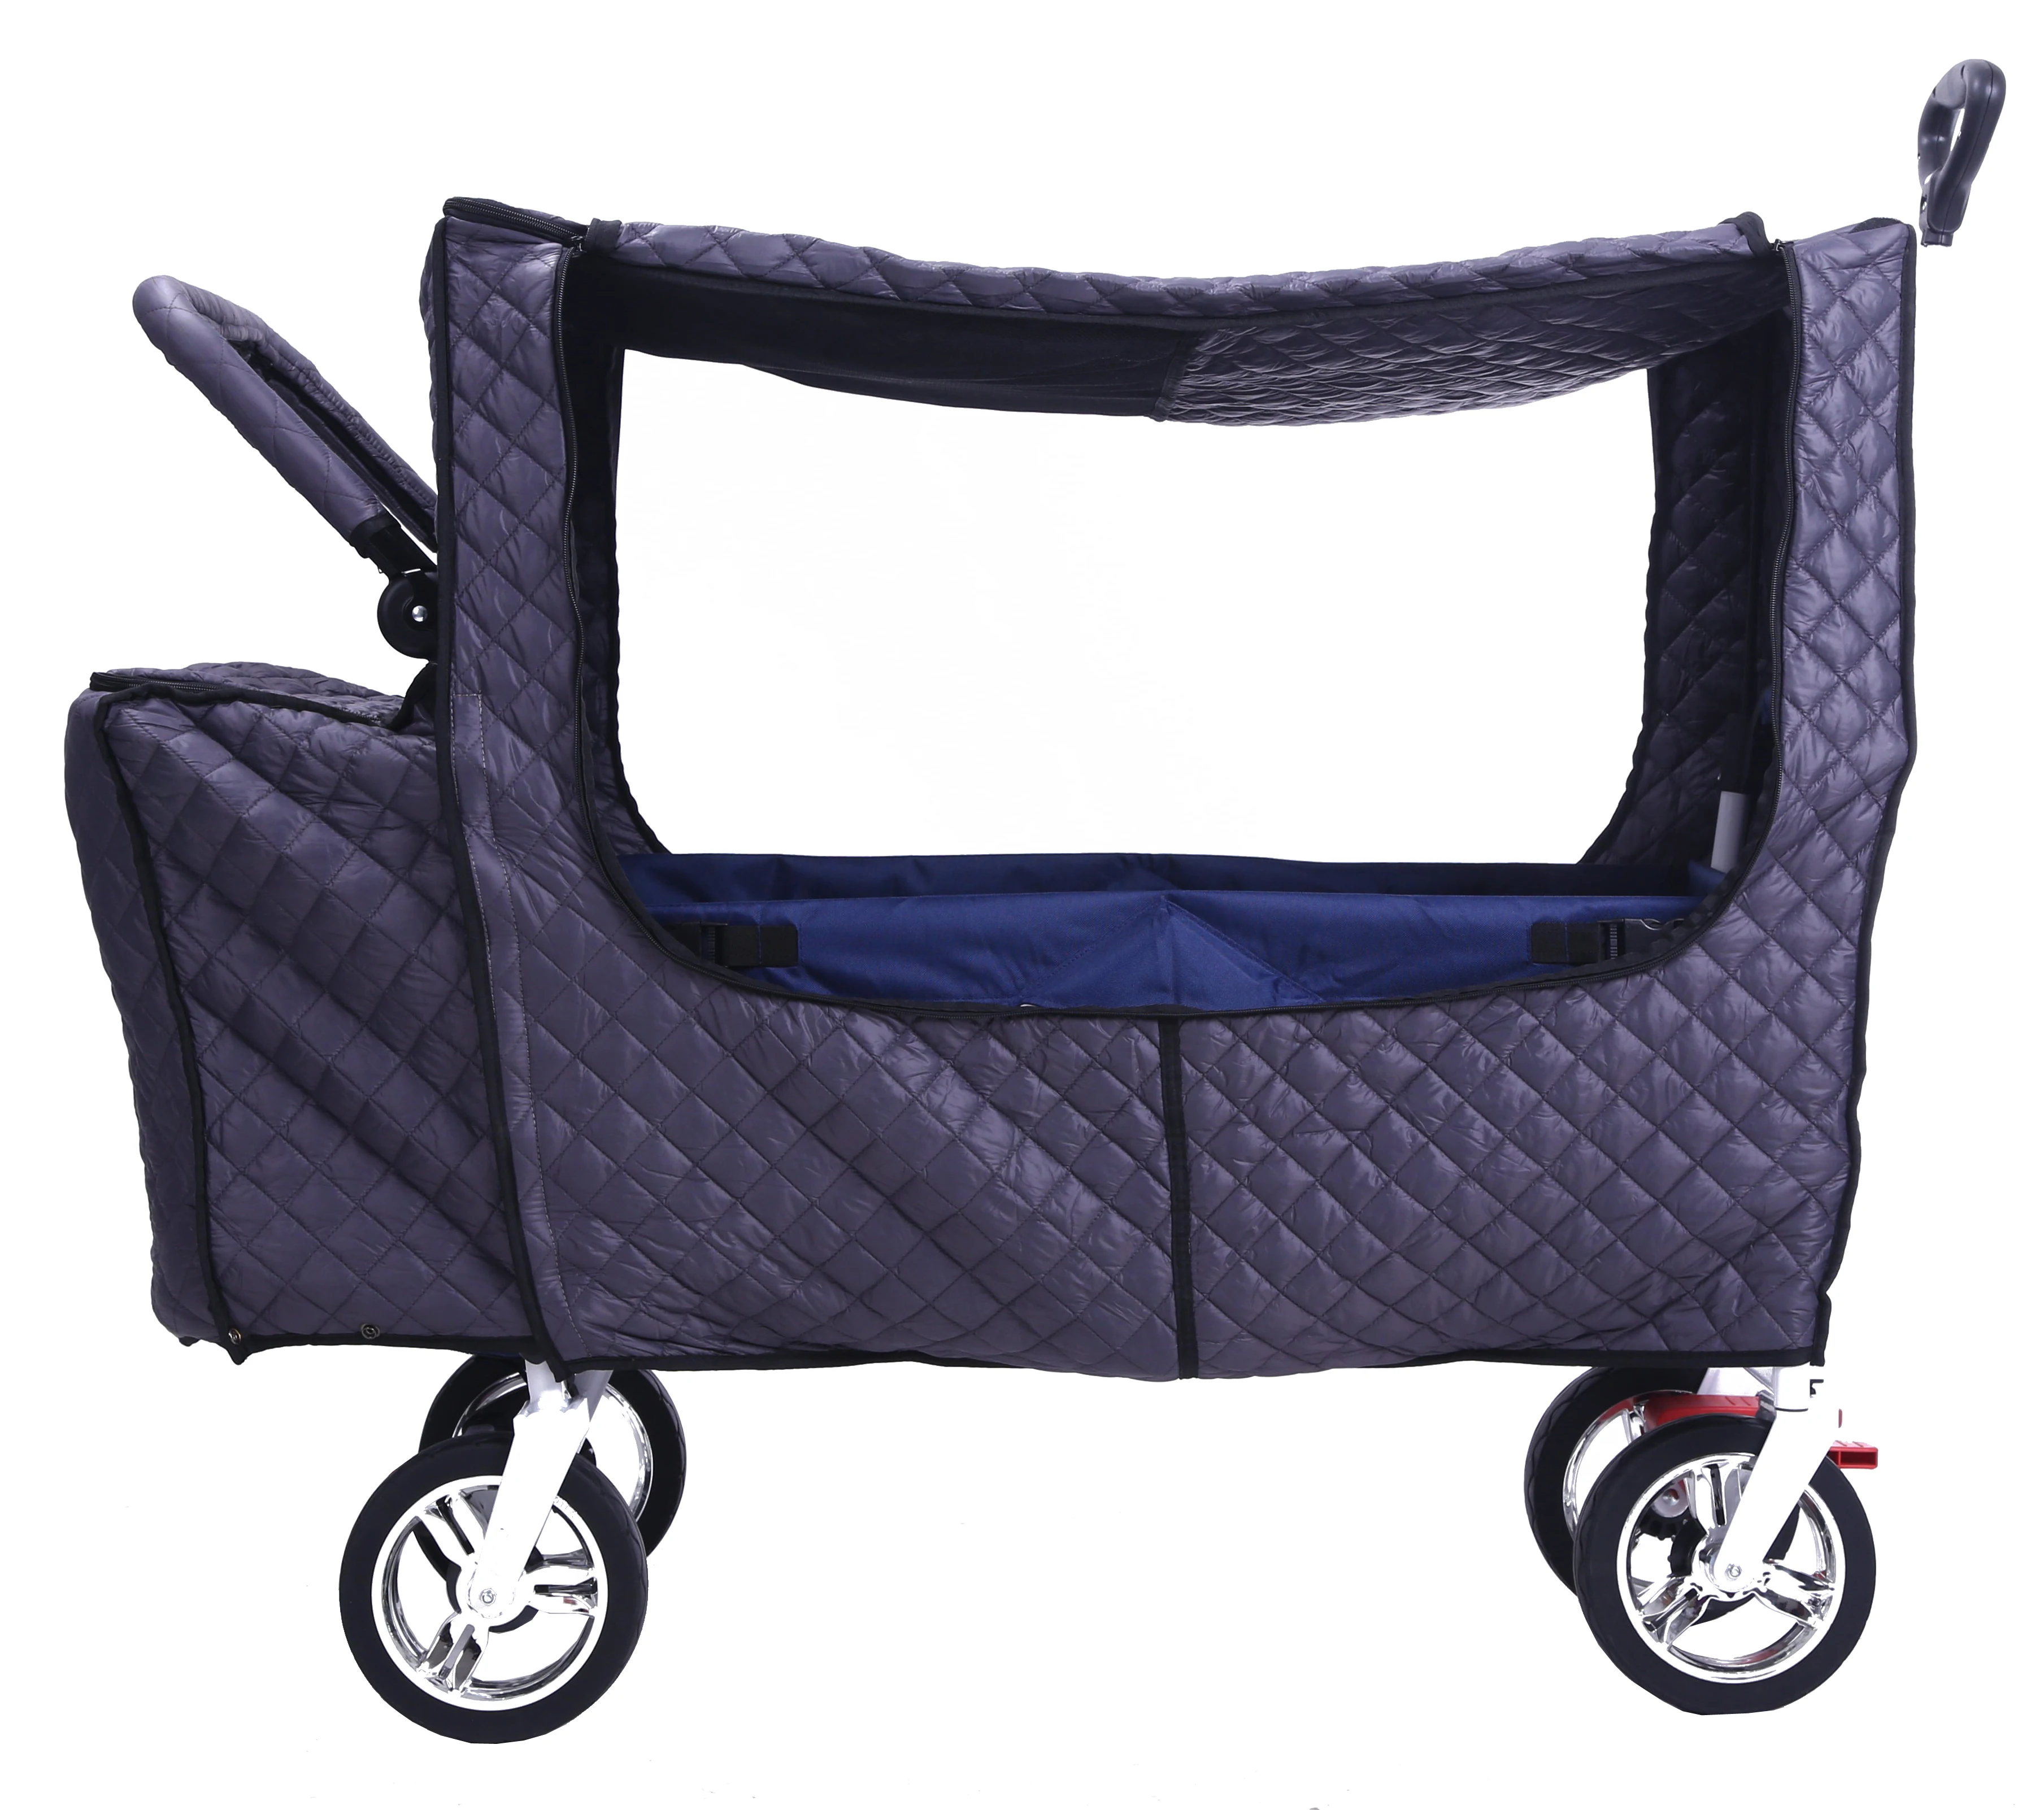 Crotec wagon CROTEC WAGON детская тележка для близнецов может сидеть в детском городском автомобиле специальный теплый комплект Зимний комплект